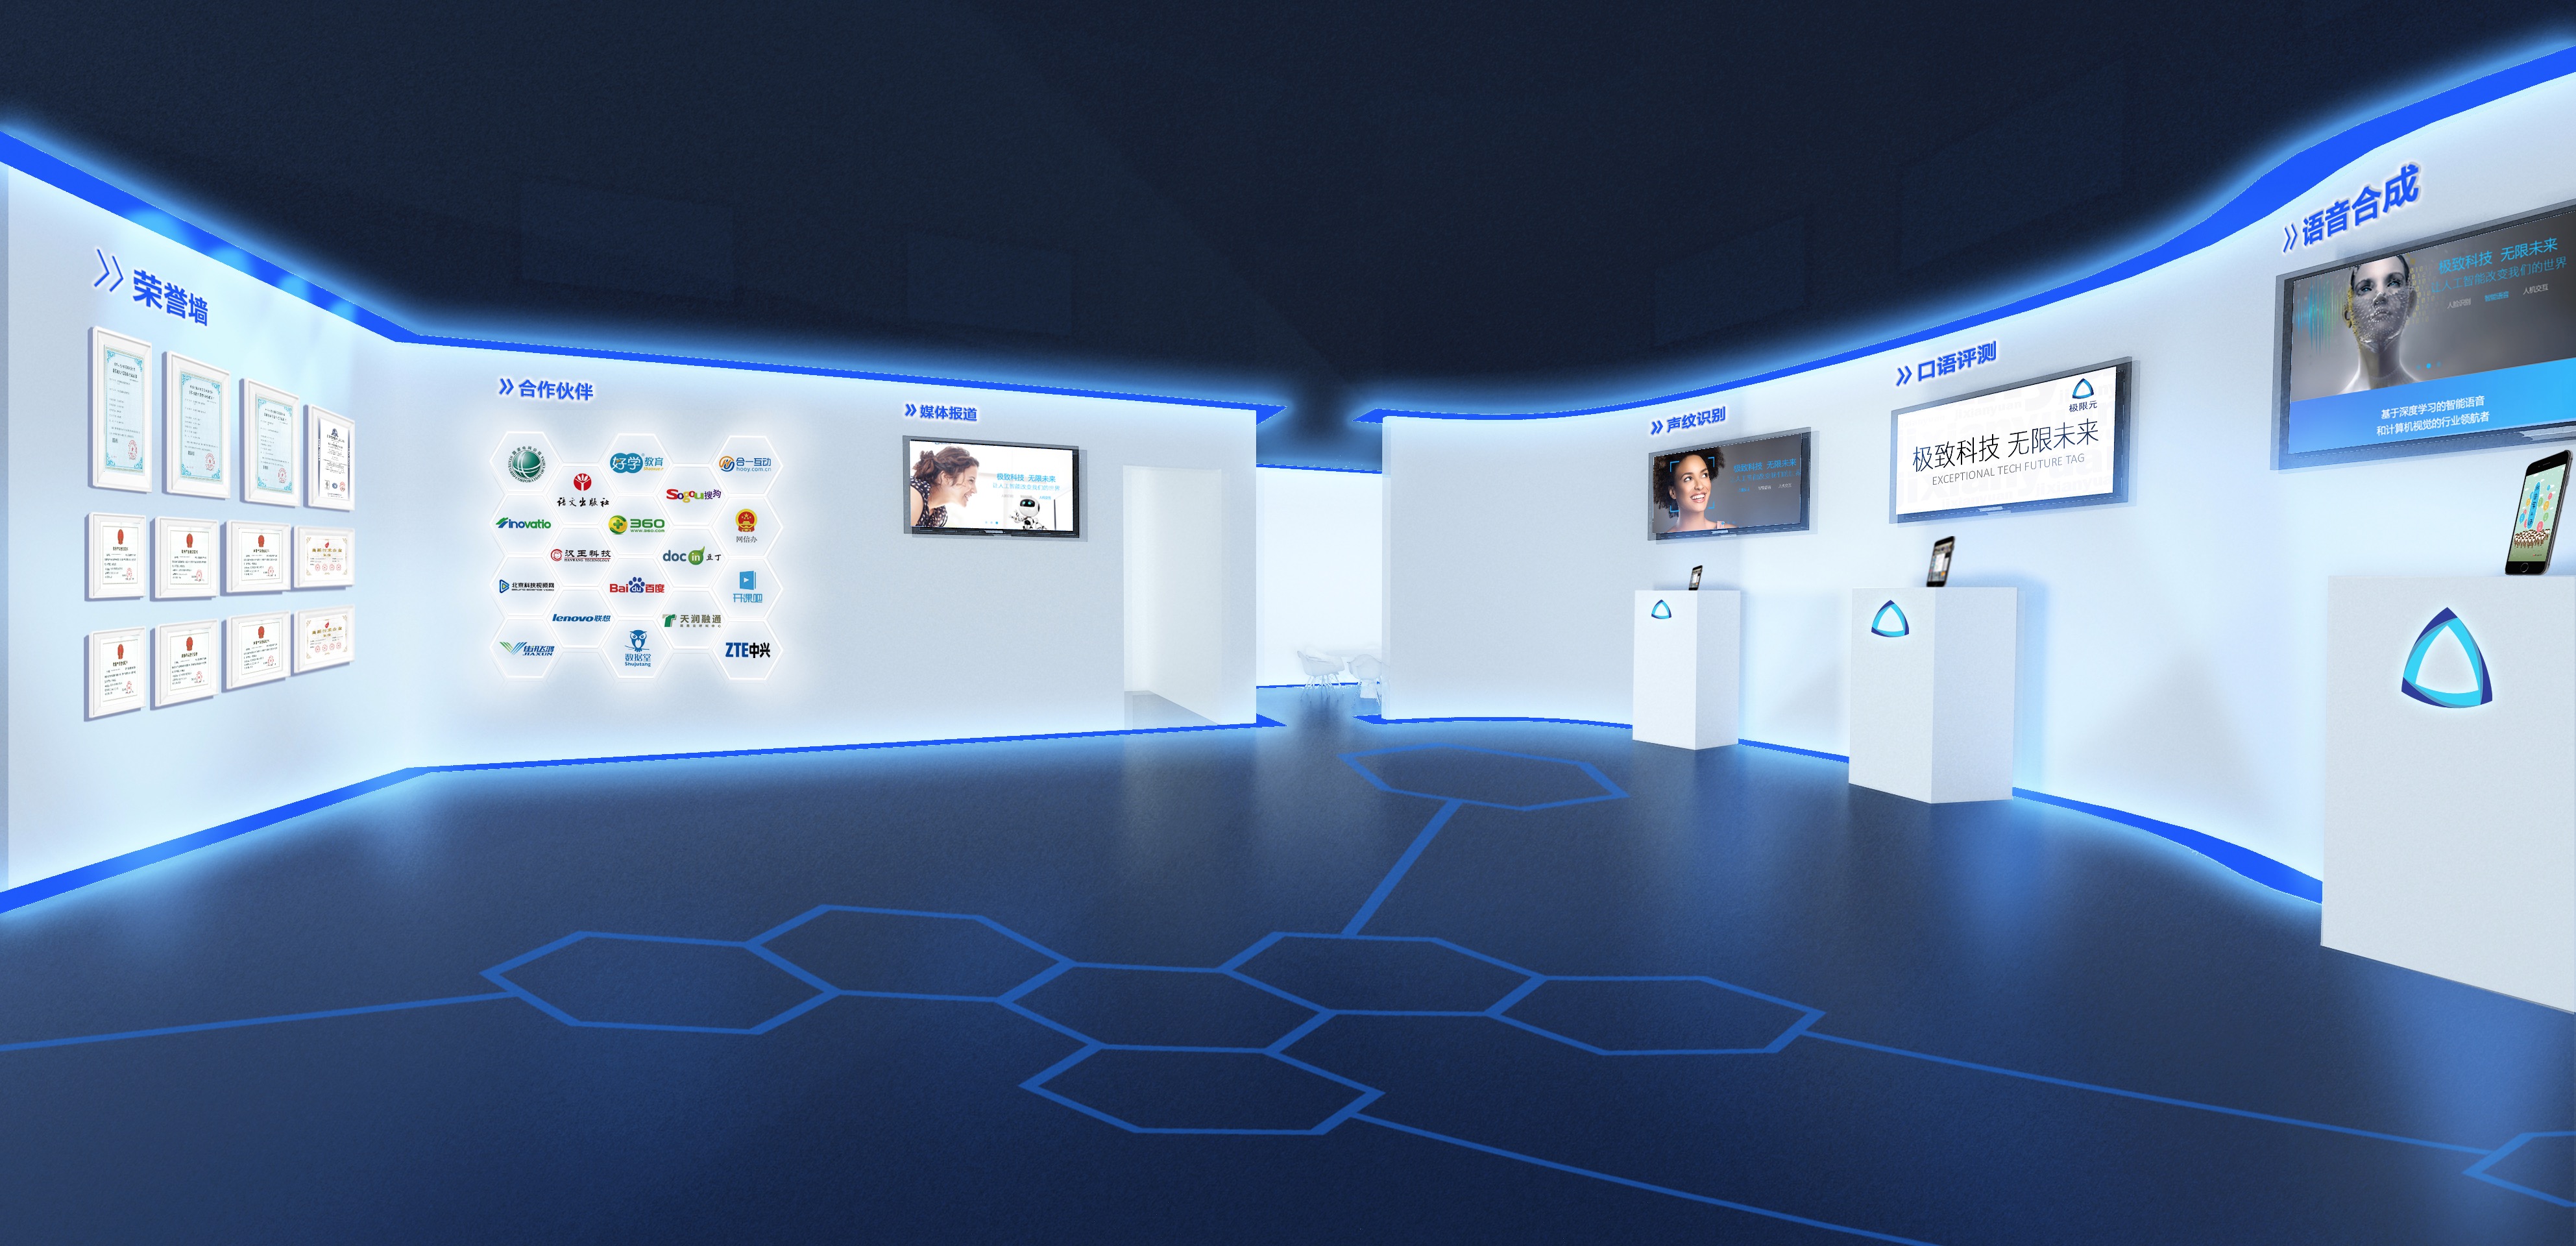 这张图片展示了一个现代化的蓝色调展览室，墙上有多个显示屏和信息板，地面上有六边形图案设计。